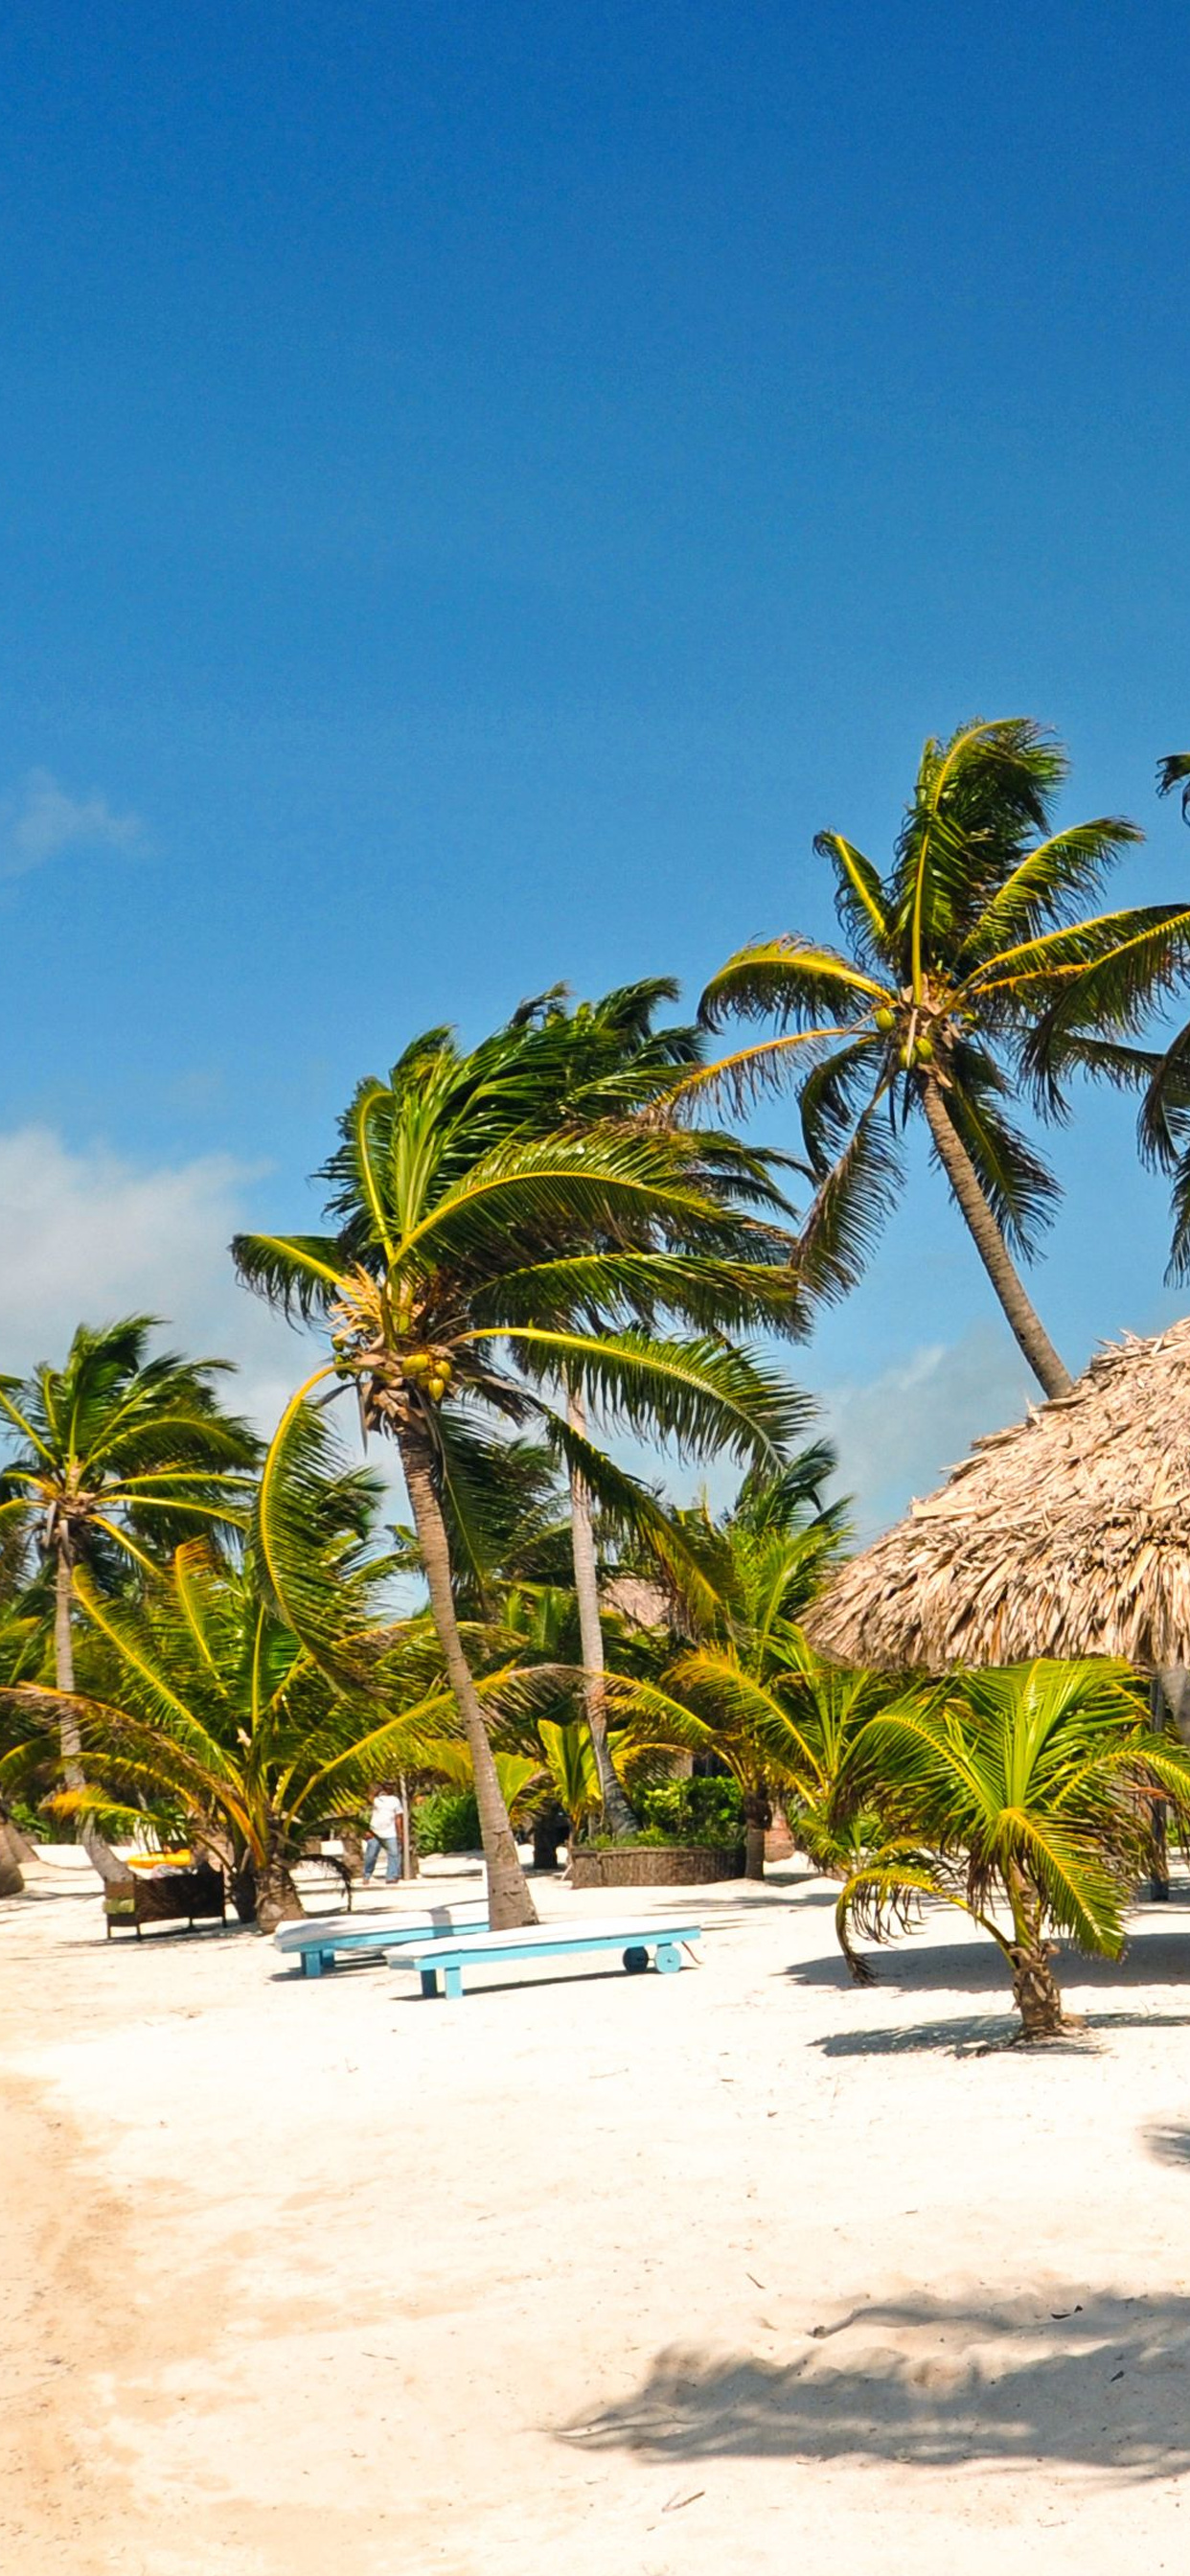 Virtual vacation, Explore Captain Morgan's Retreat, Caribbean dreams, Online getaway, 1250x2690 HD Handy